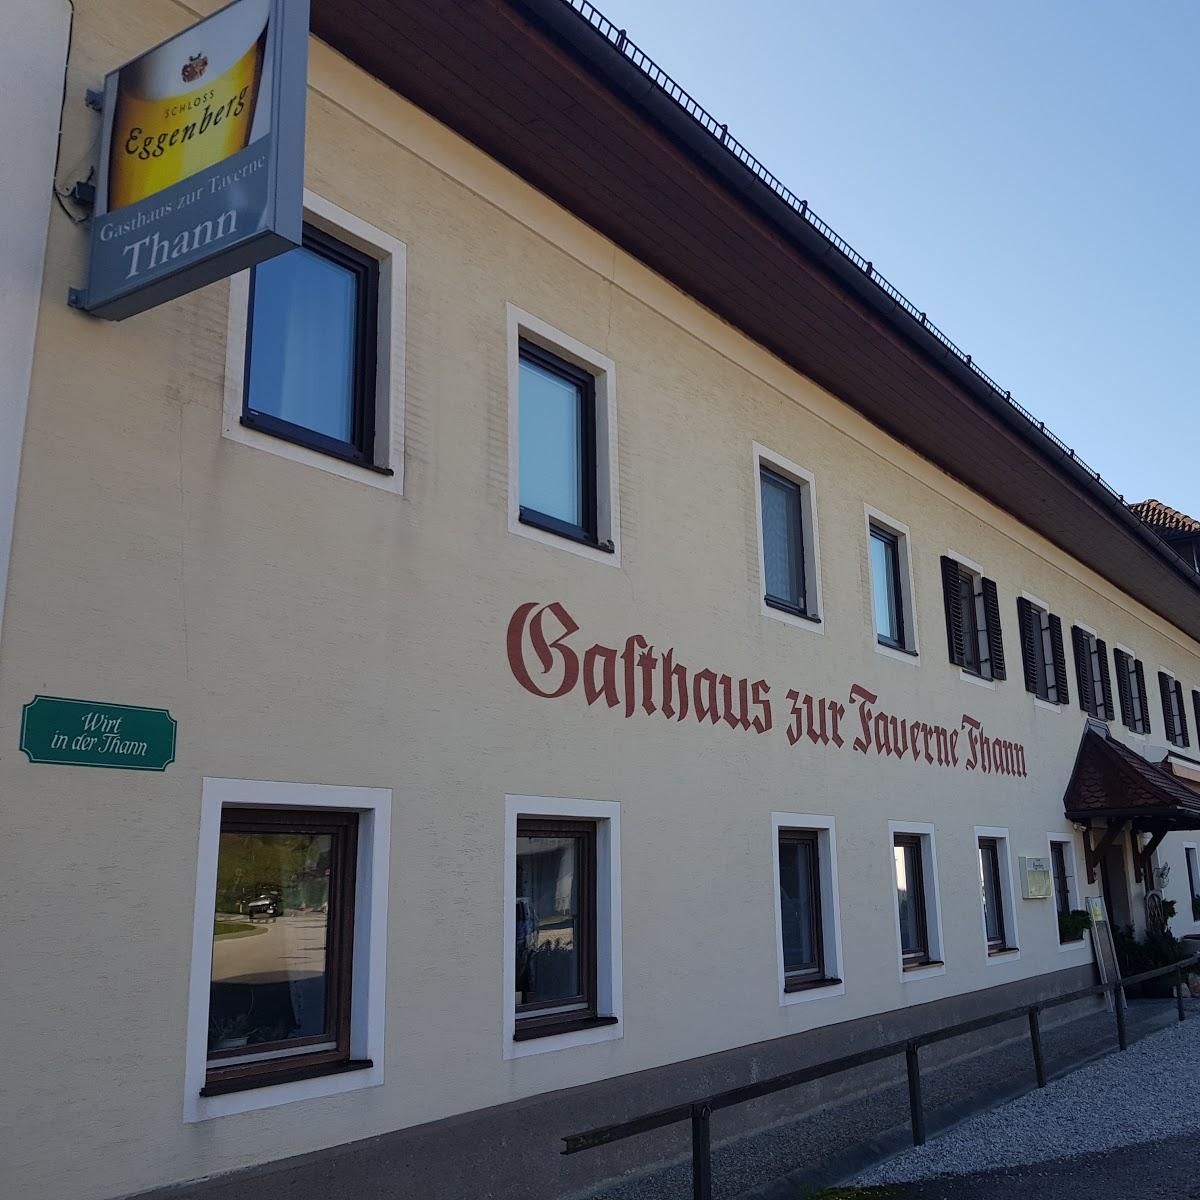 Restaurant "Gasthaus zur Taverne Thann" in Scharnstein